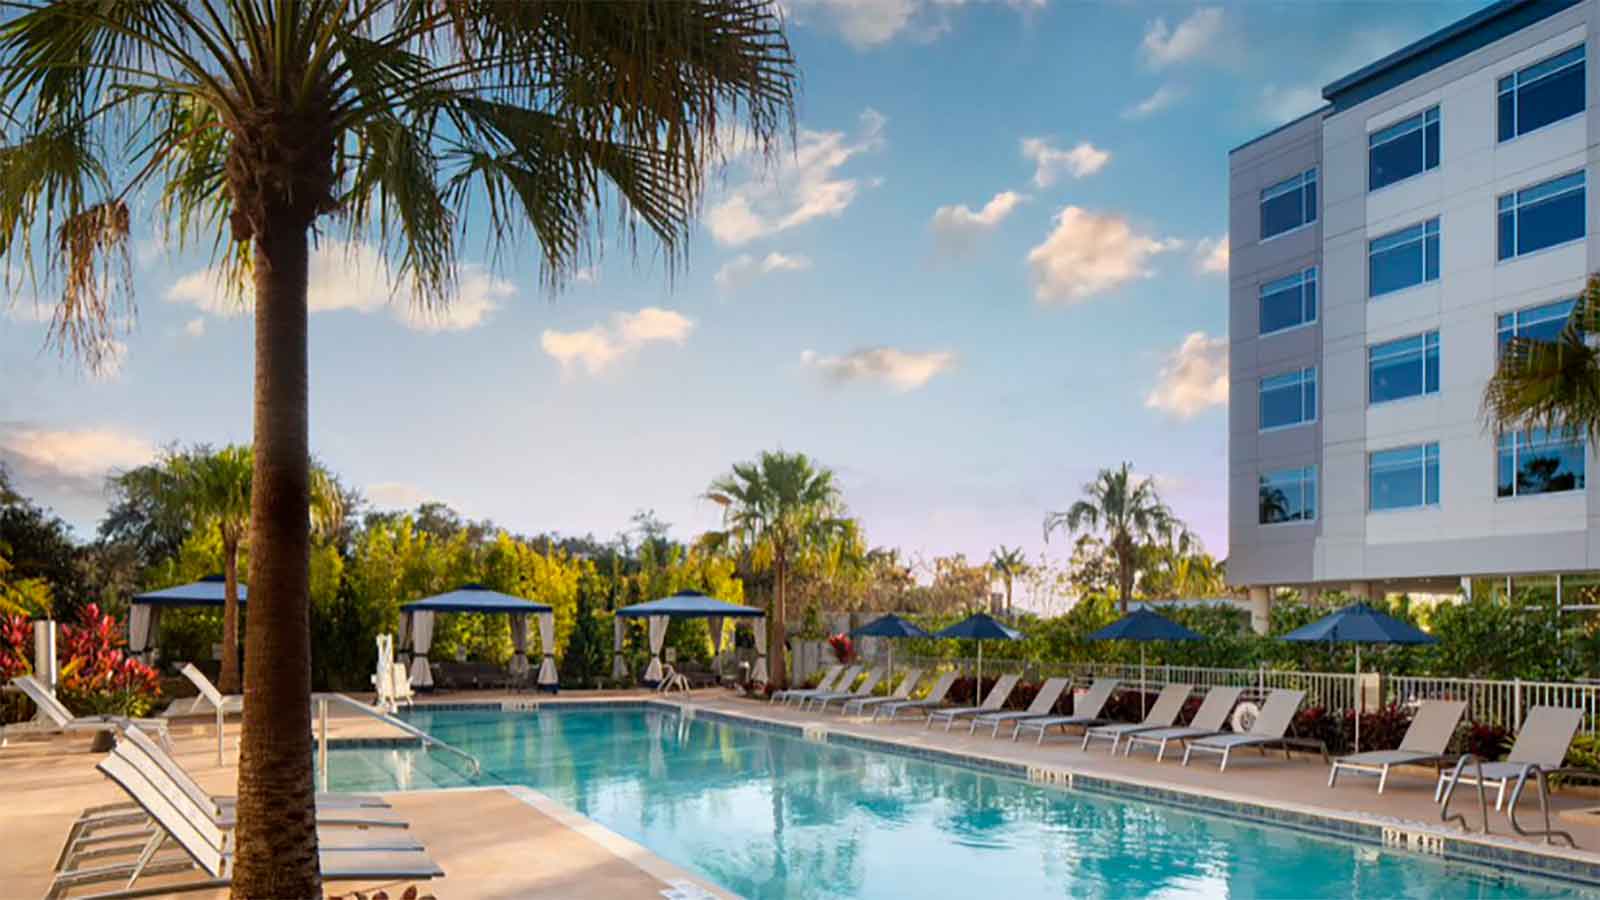 Celeste Hotel Orlando pool area